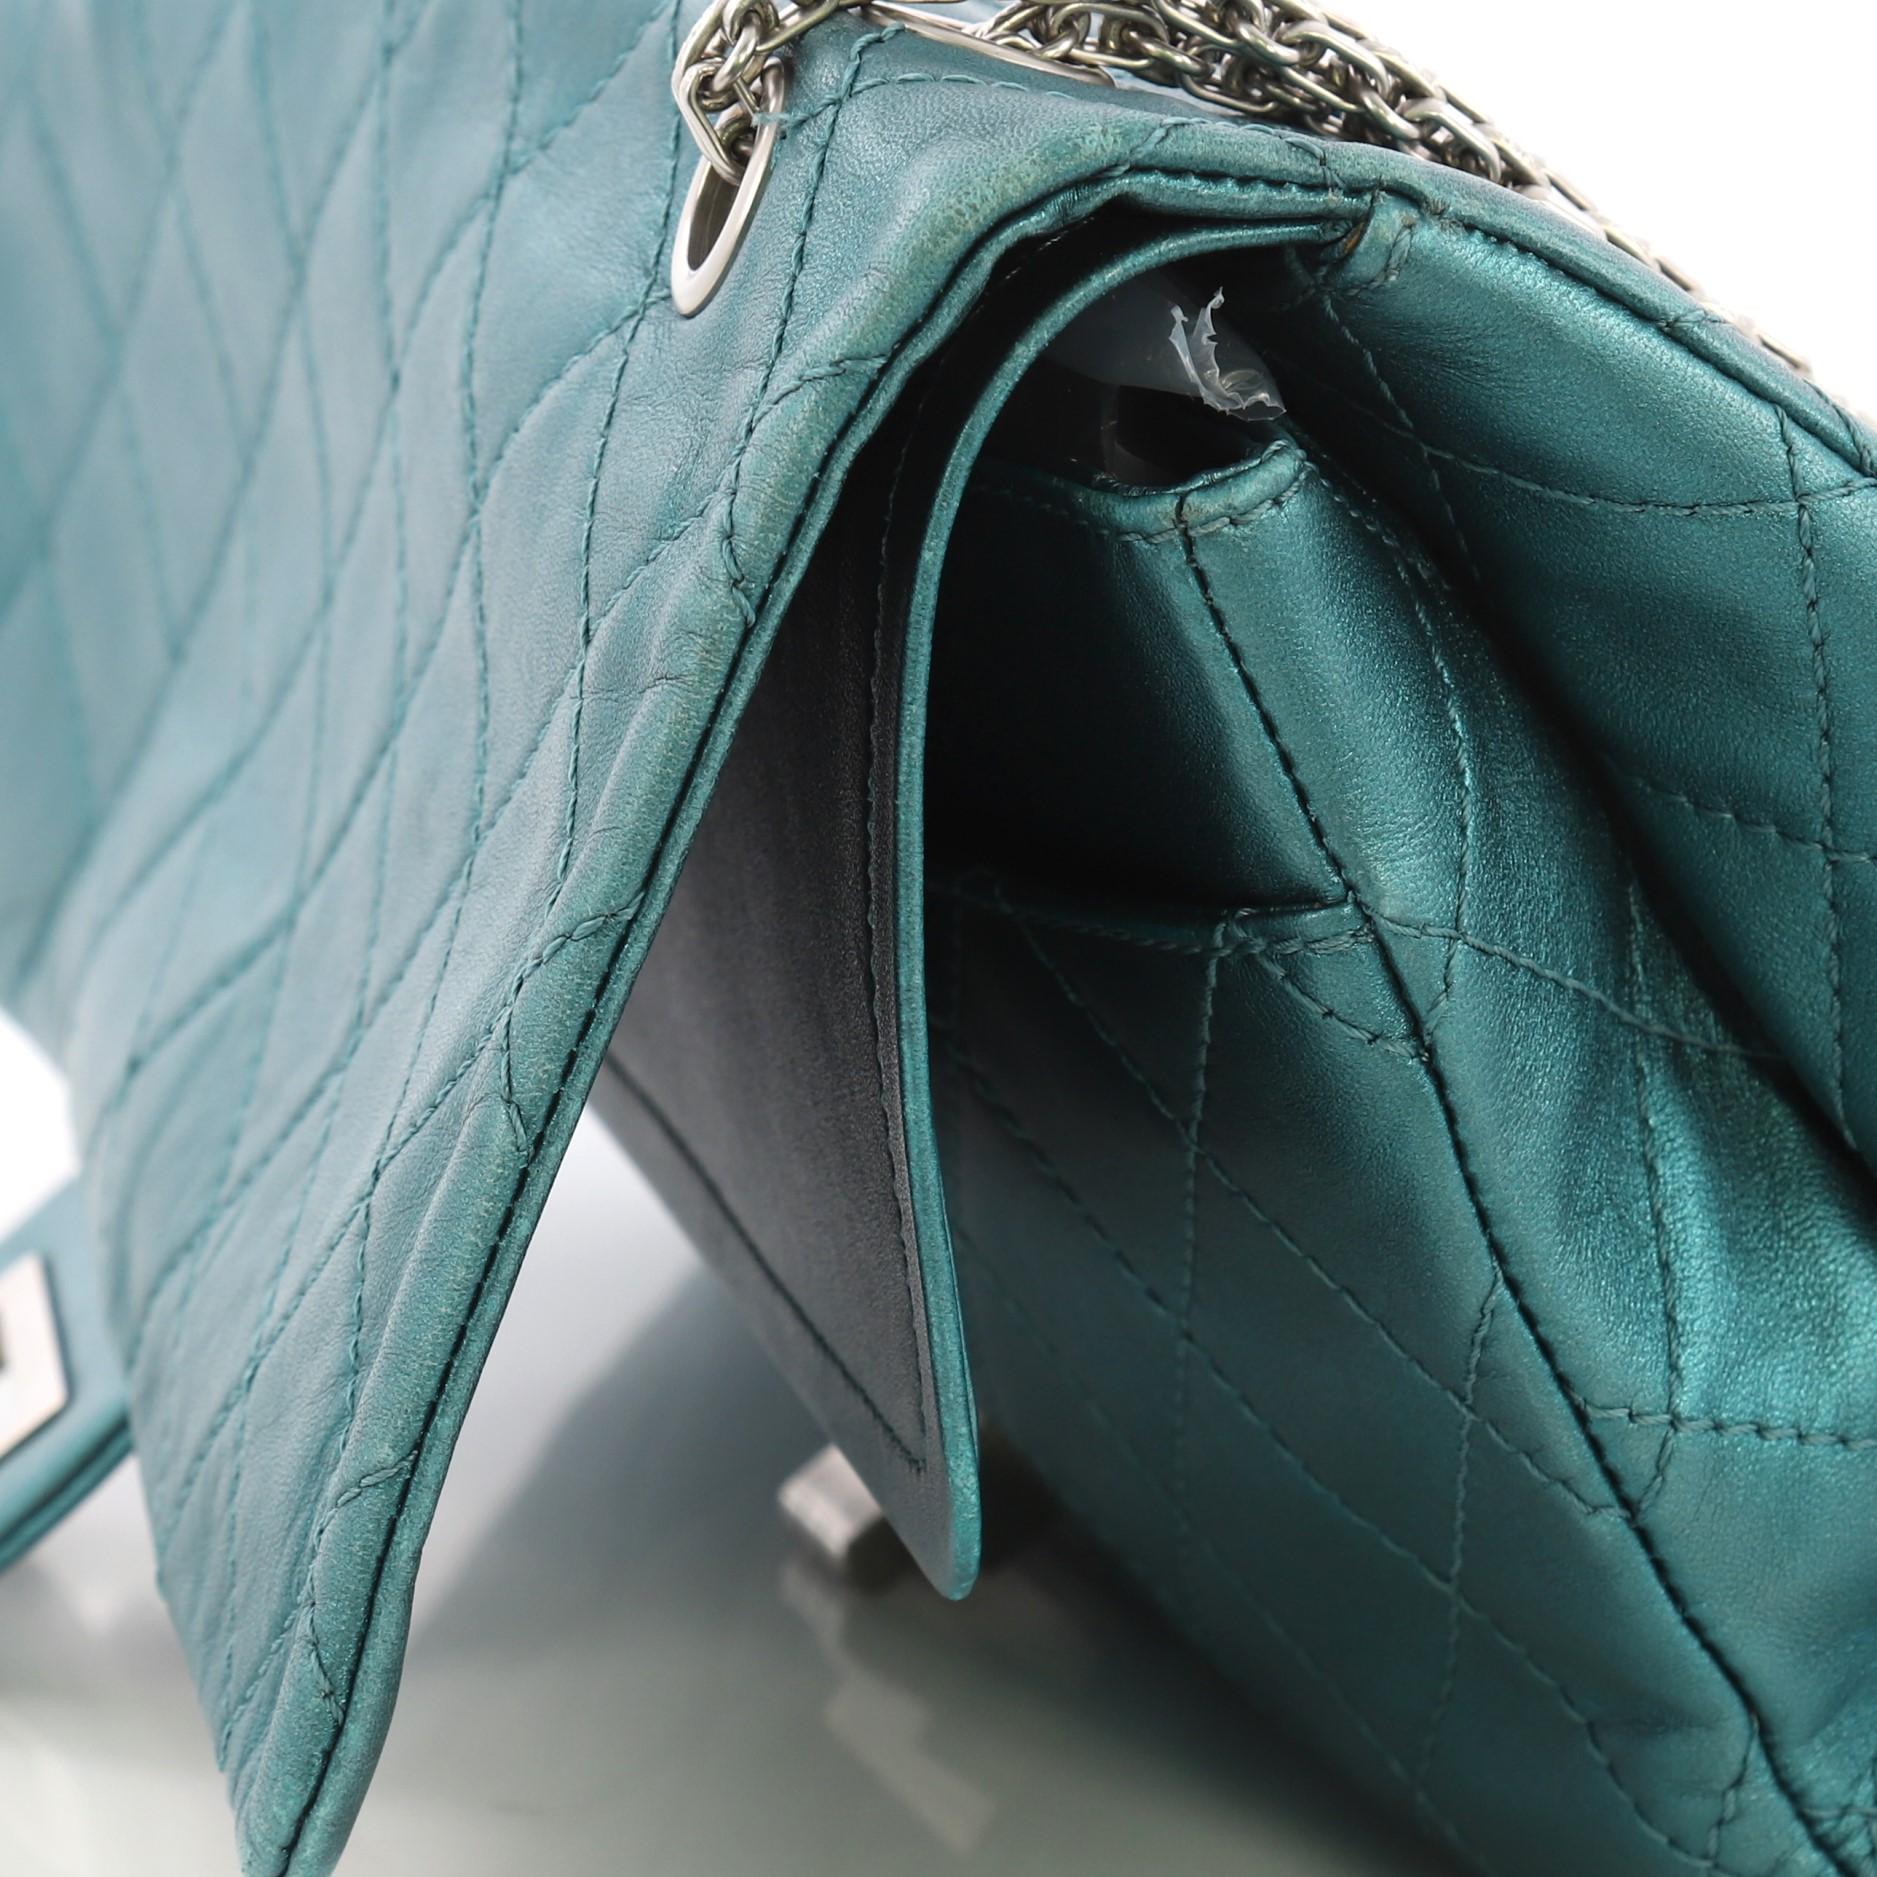 Chanel Reissue 2.55 Handbag Quilted Metallic Aged Calfskin 227 3